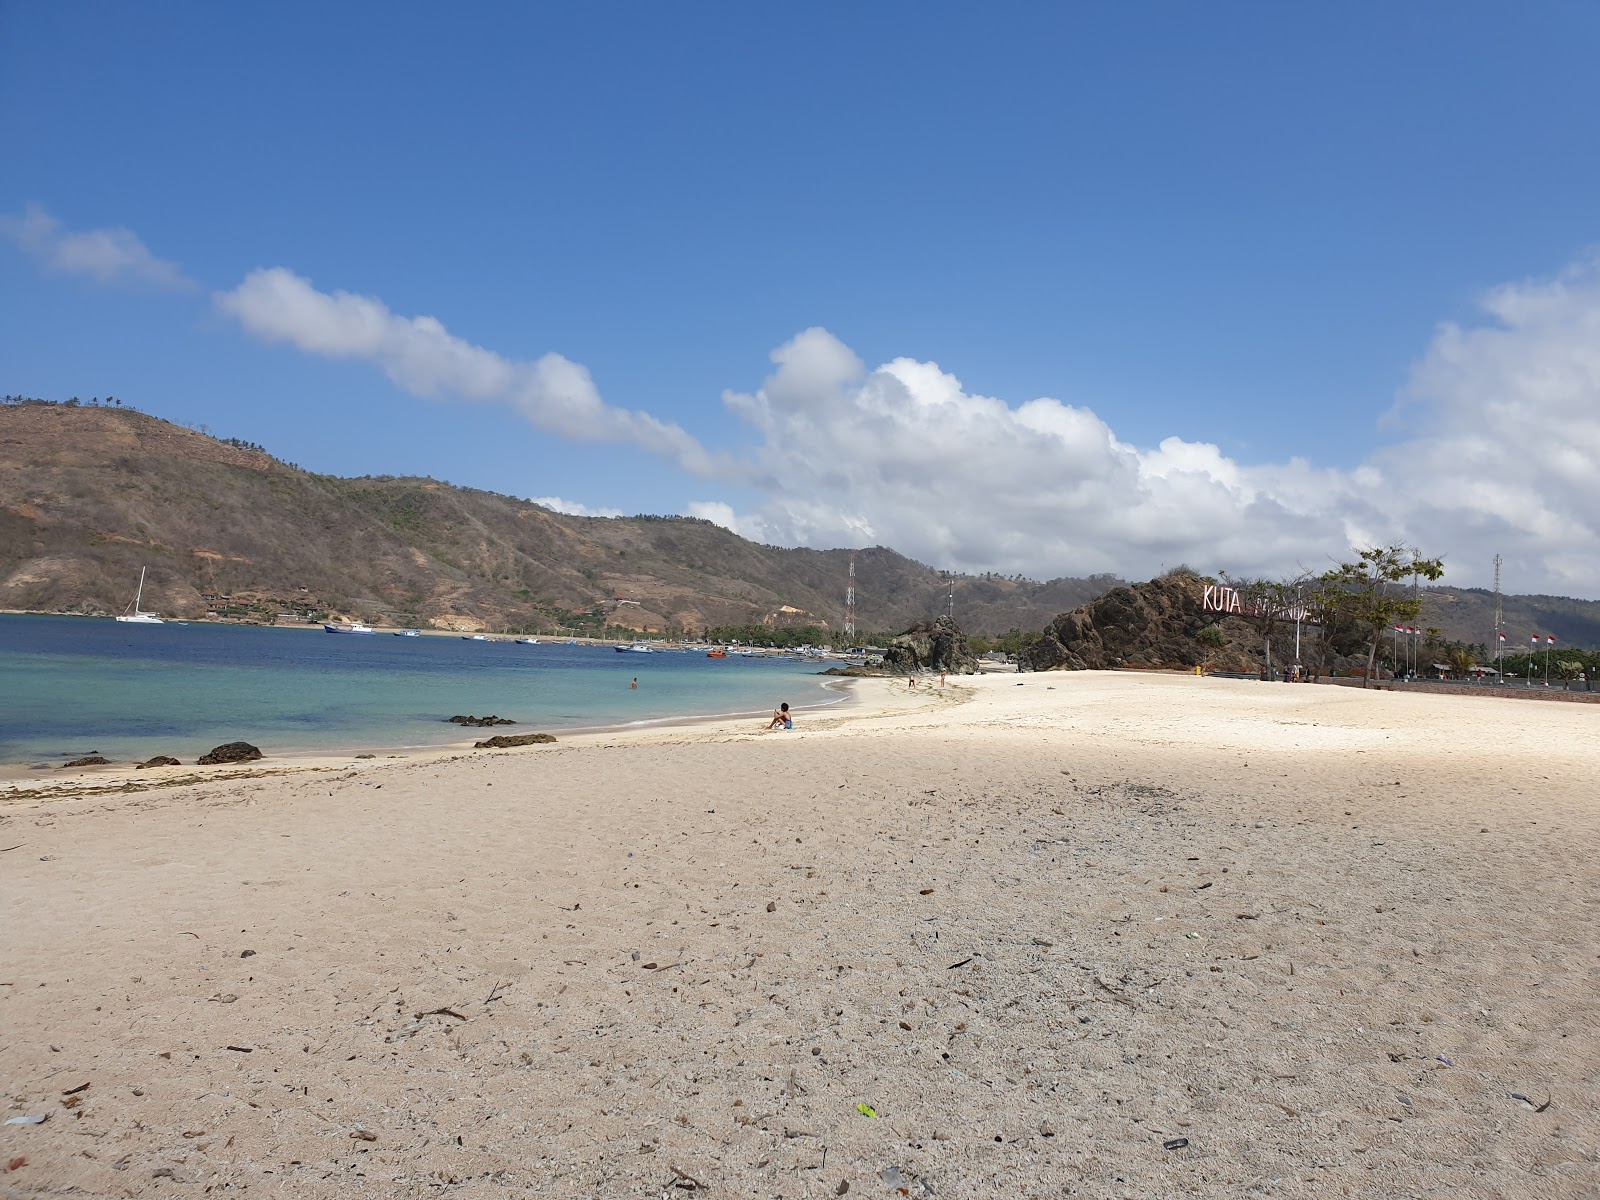 Foto von Kuta Mandalika Beach von Klippen umgeben